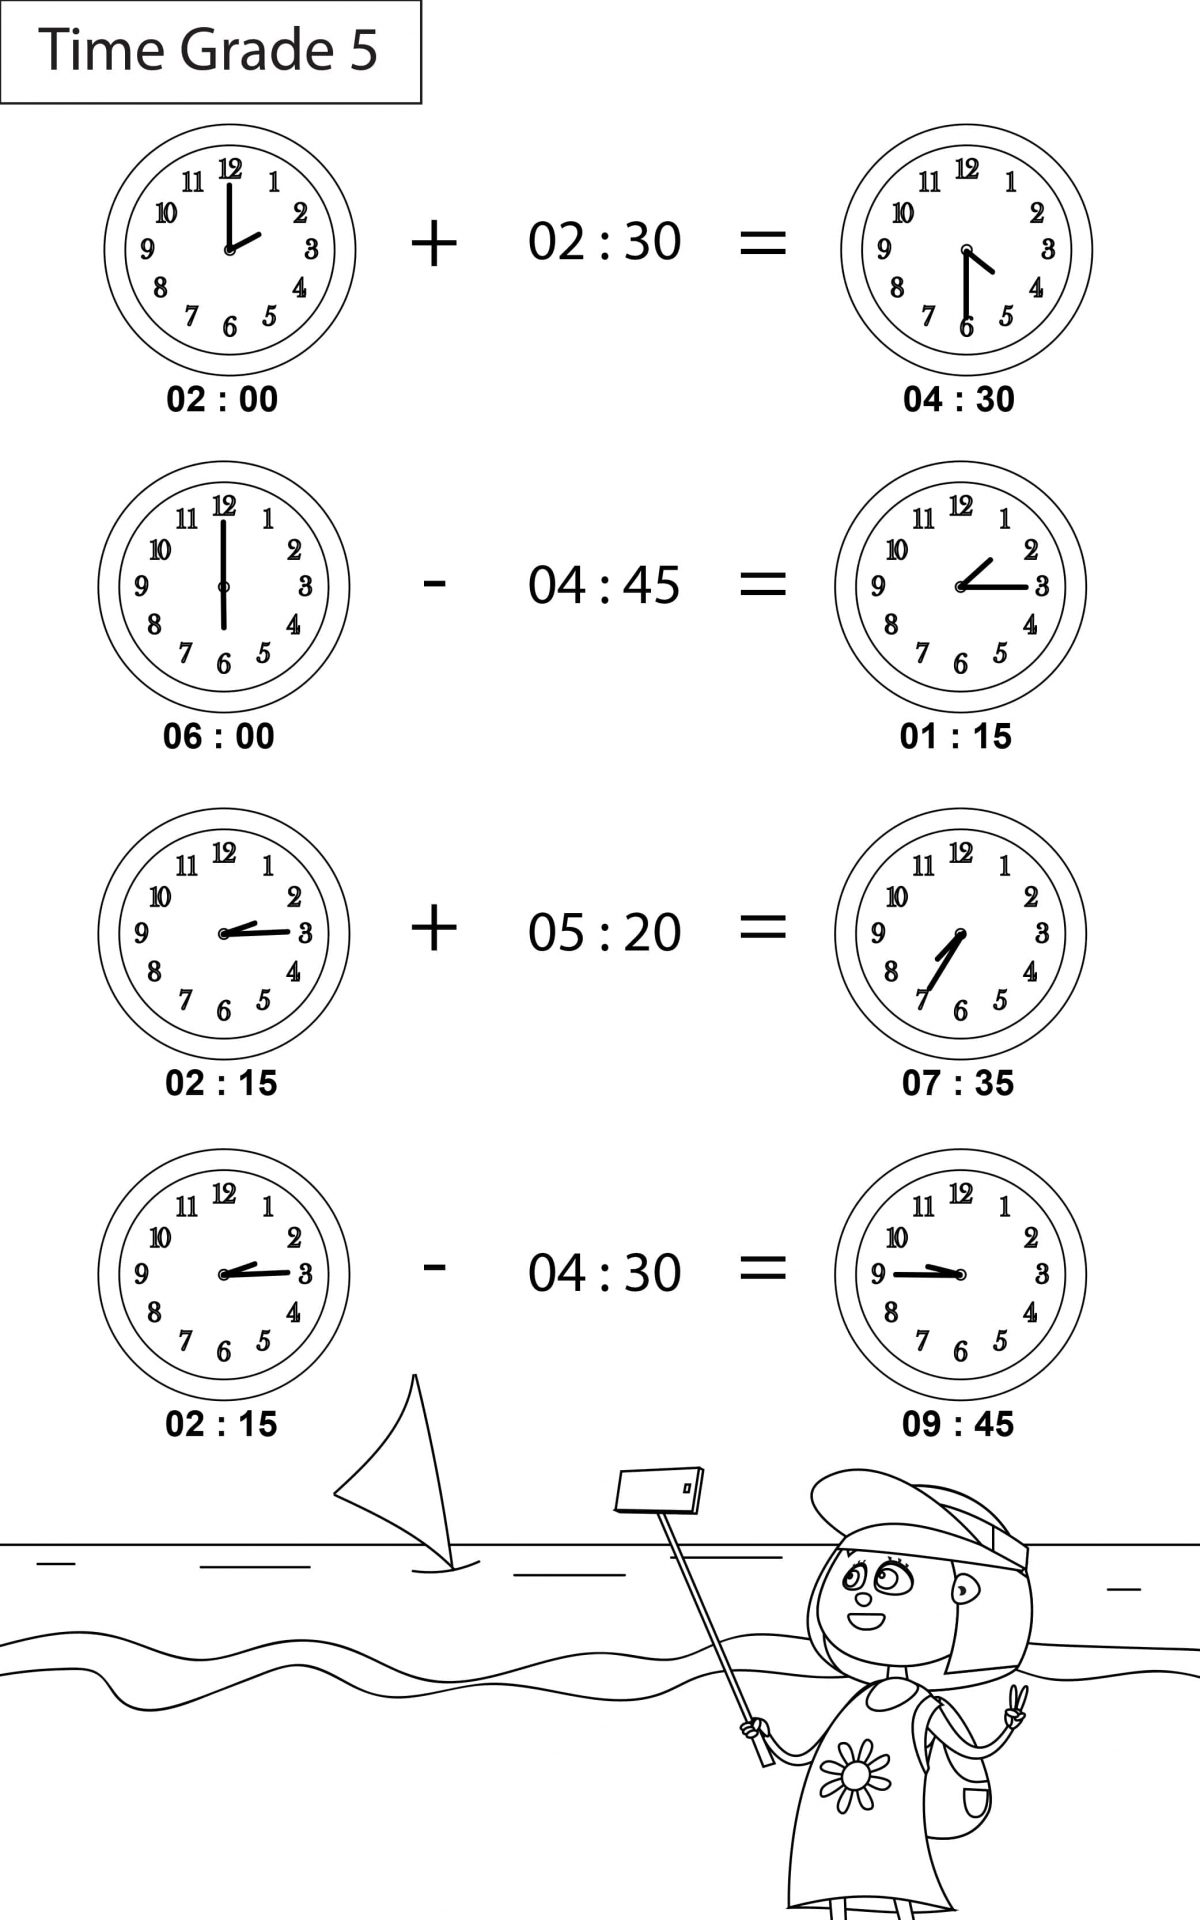 maths-worksheets-grade-4-time-key2practice-workbooks-time-worksheets